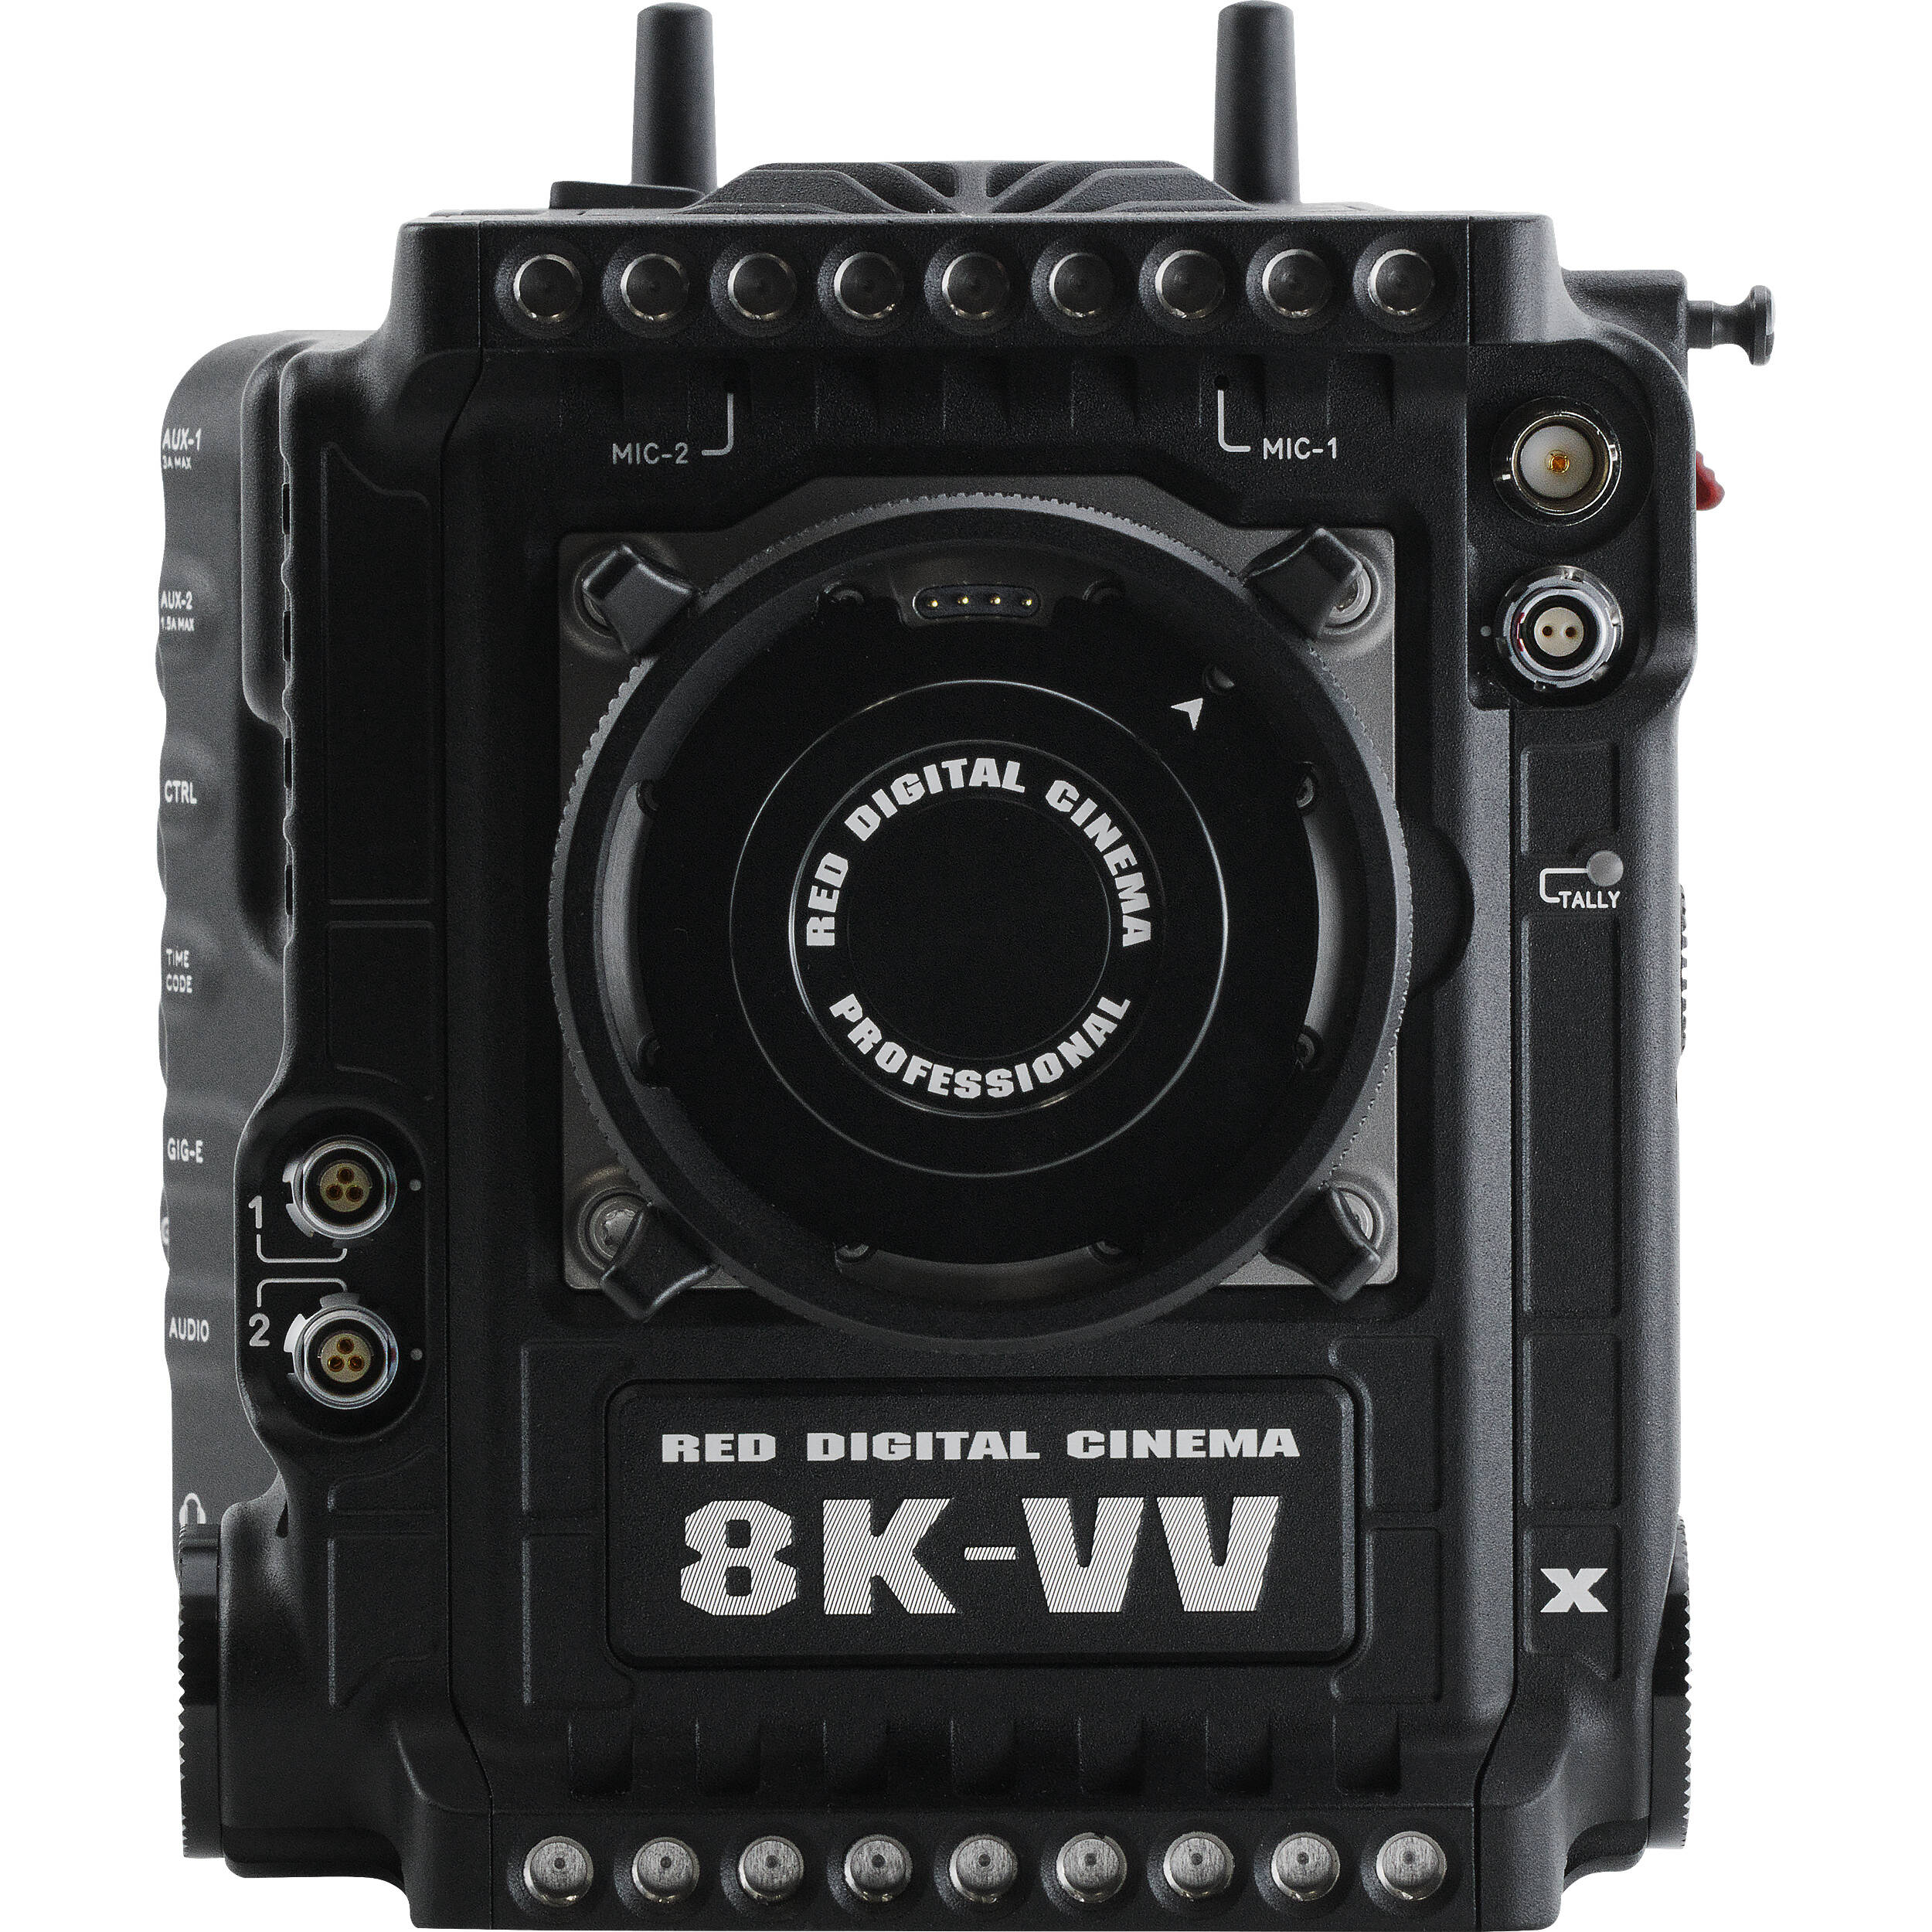 RED DIGITAL CINEMA V-RAPTOR XL [X] 8K VV Camera (Gold Mount)